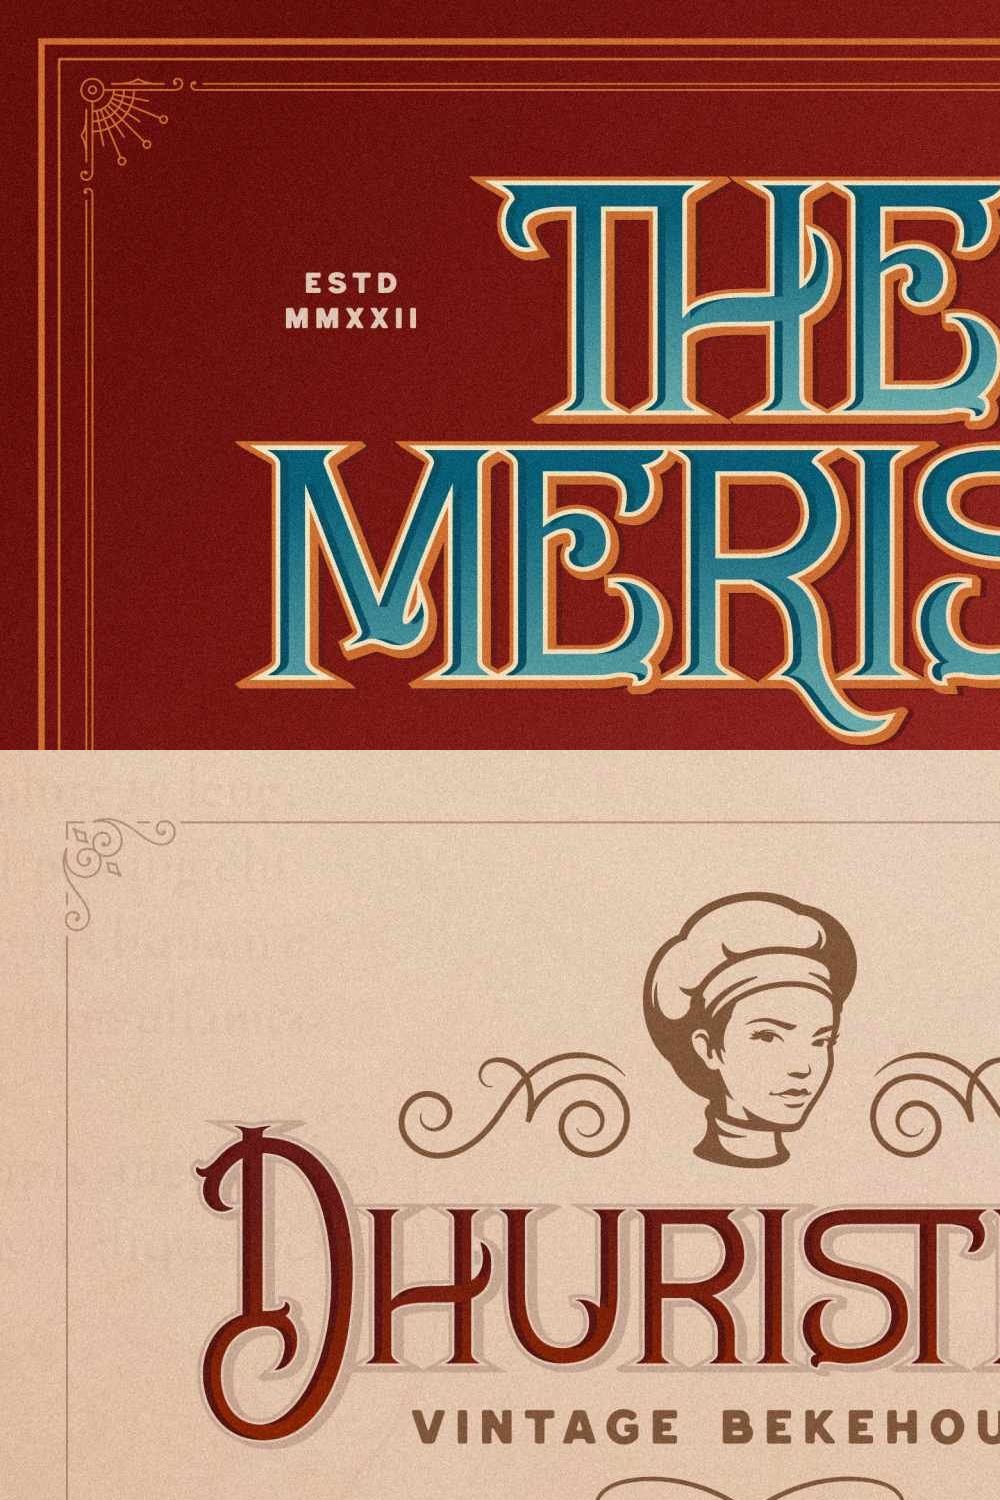 Merisk Old Fonts pinterest preview image.